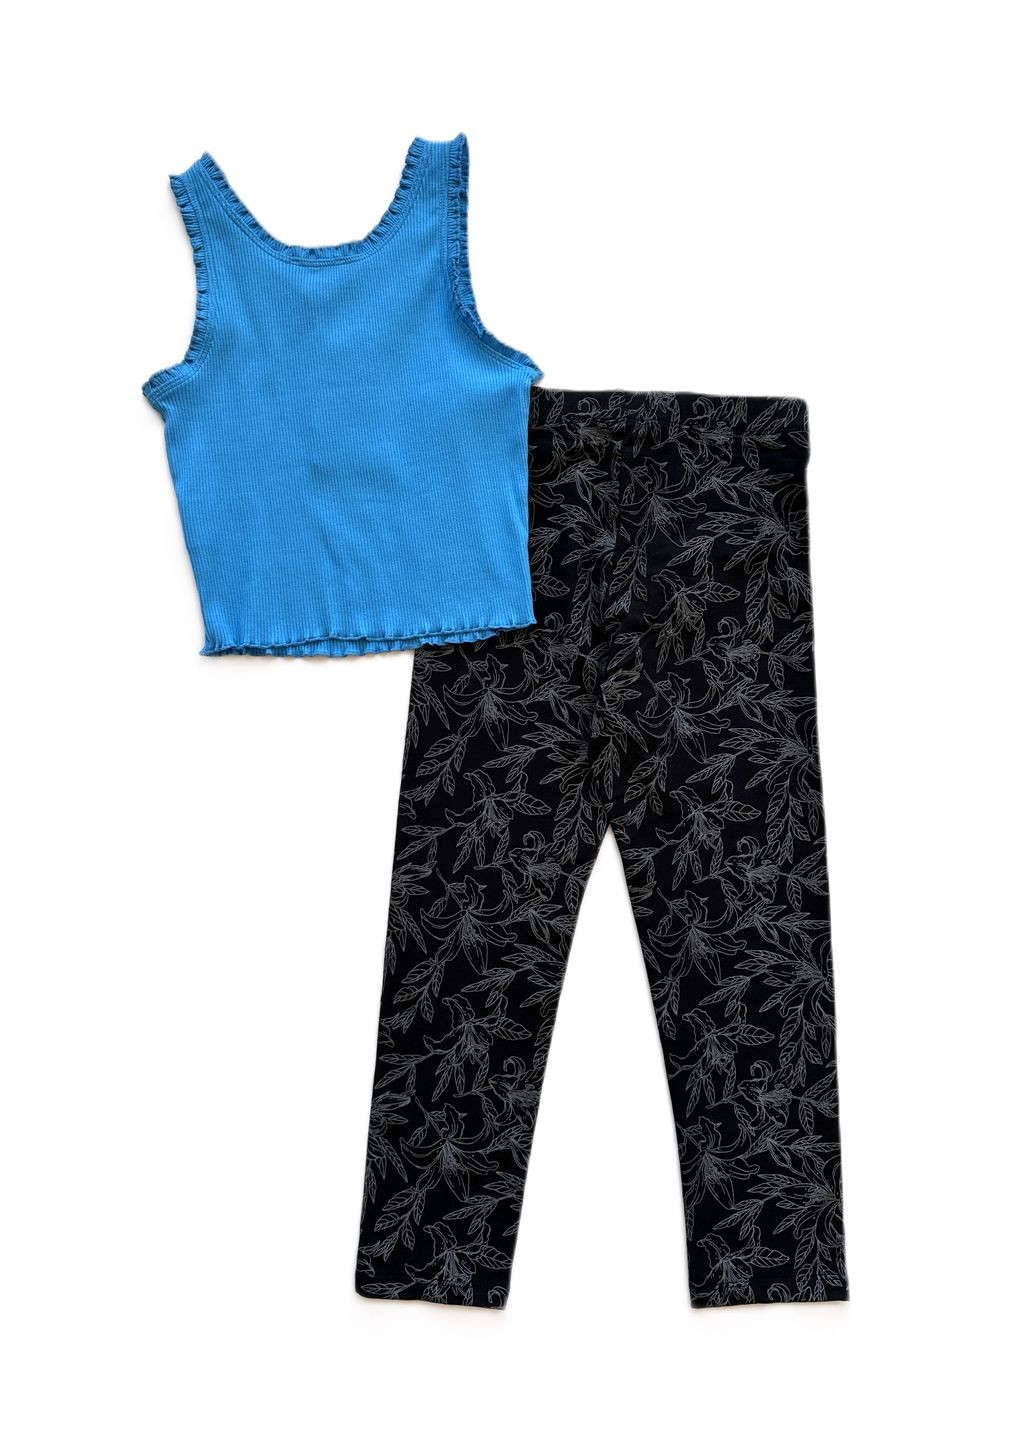 Бирюзовый летний комплект для девочки майка рубчик бирюзовый 2000-59 + леггинсы черные трикотажные 2000-62 (146 см) OVS